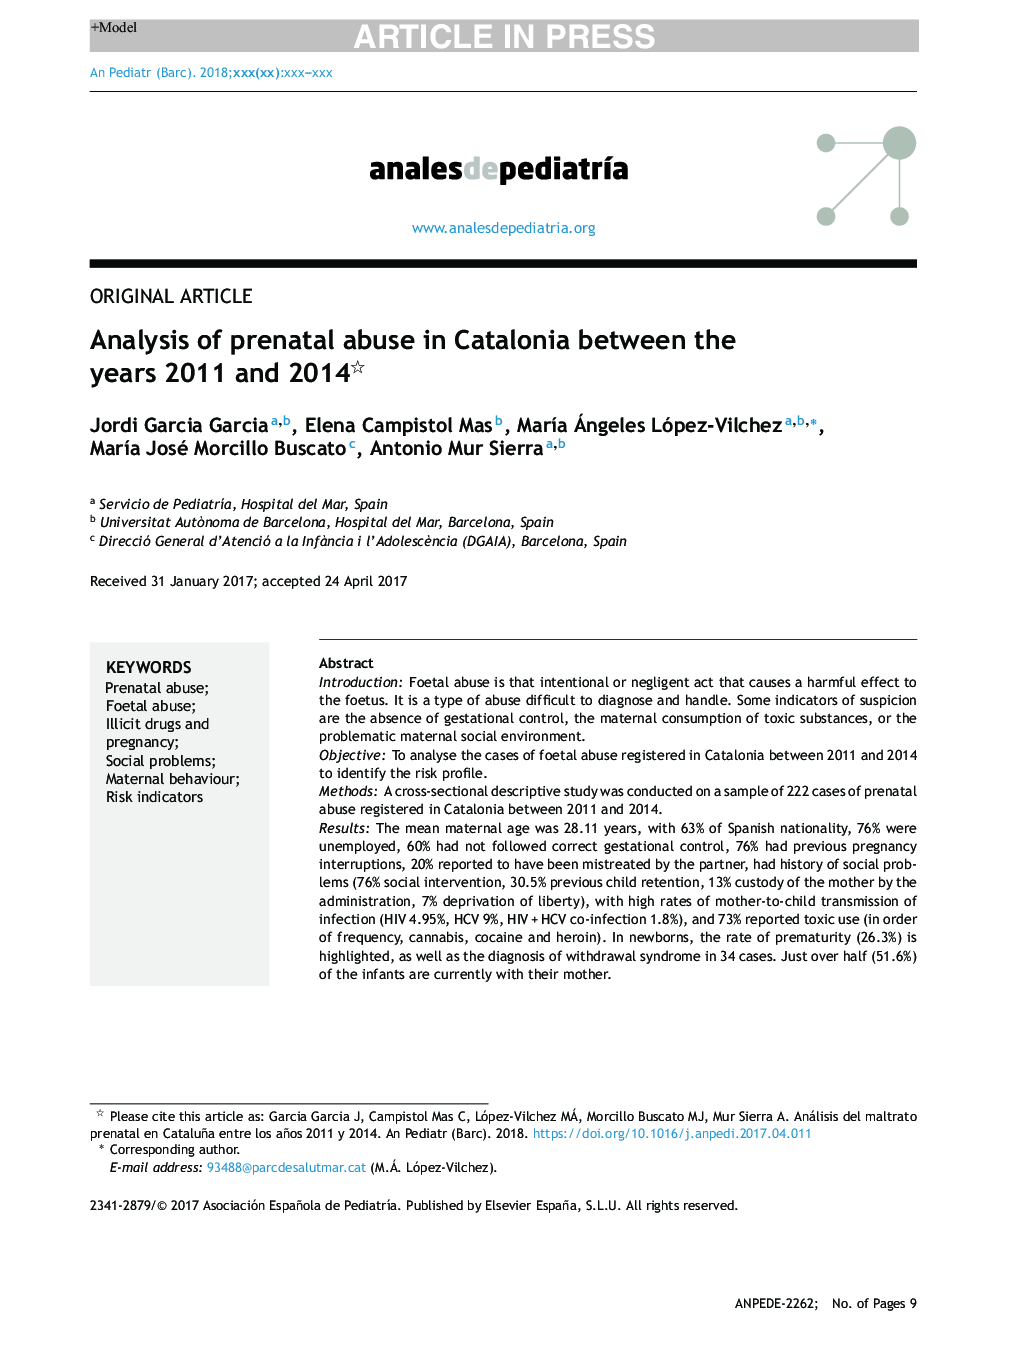 تجزیه و تحلیل سوء استفاده قبل از تولد در کاتالونیا بین سال های 2011 و 2014 